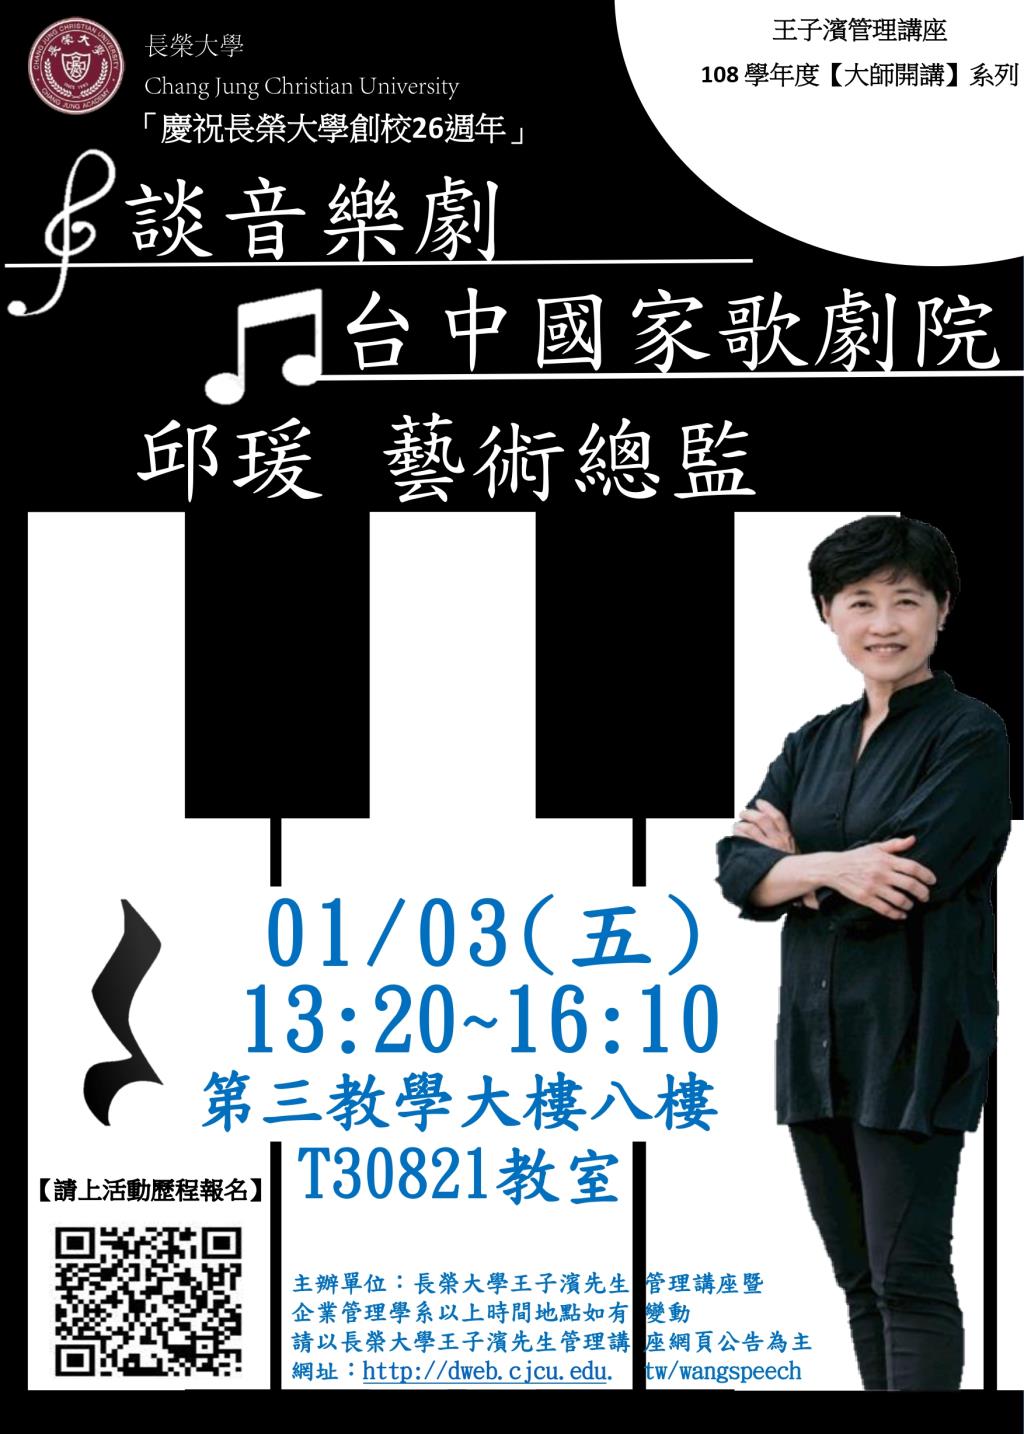 敬邀參加本週五下午(01/03)王子濱先生管理講---台中國家歌劇院 邱瑗藝術總監